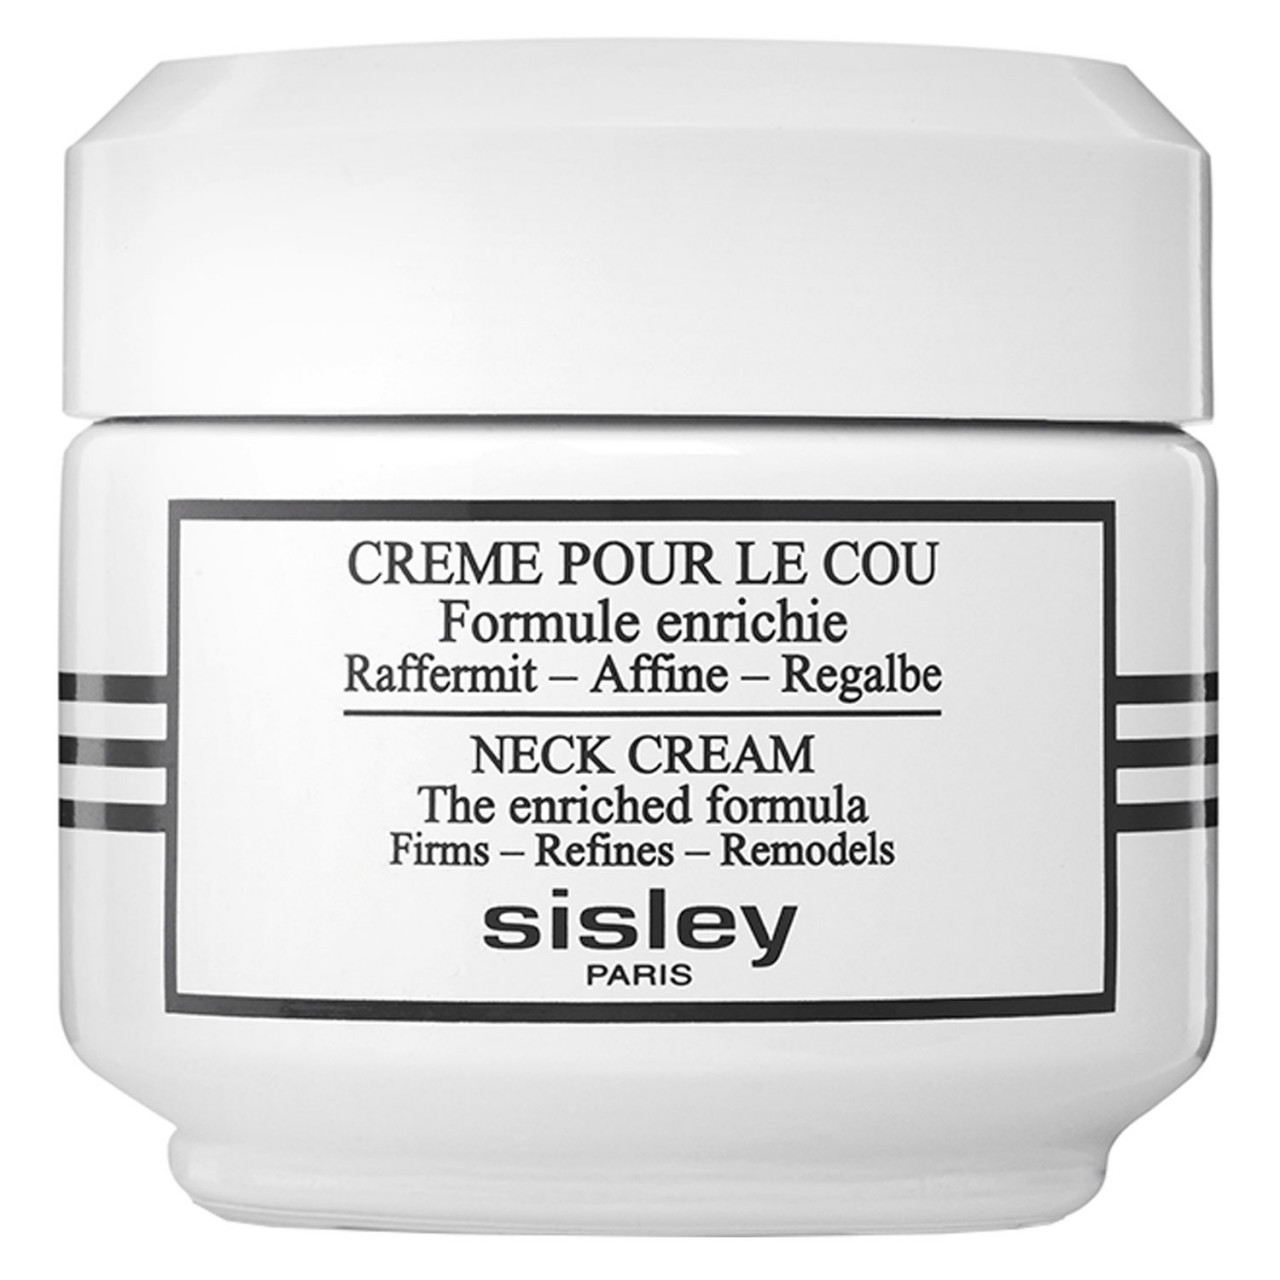 Sisley Skincare - Crème pour le Cou Formule Enrichie von SISLEY